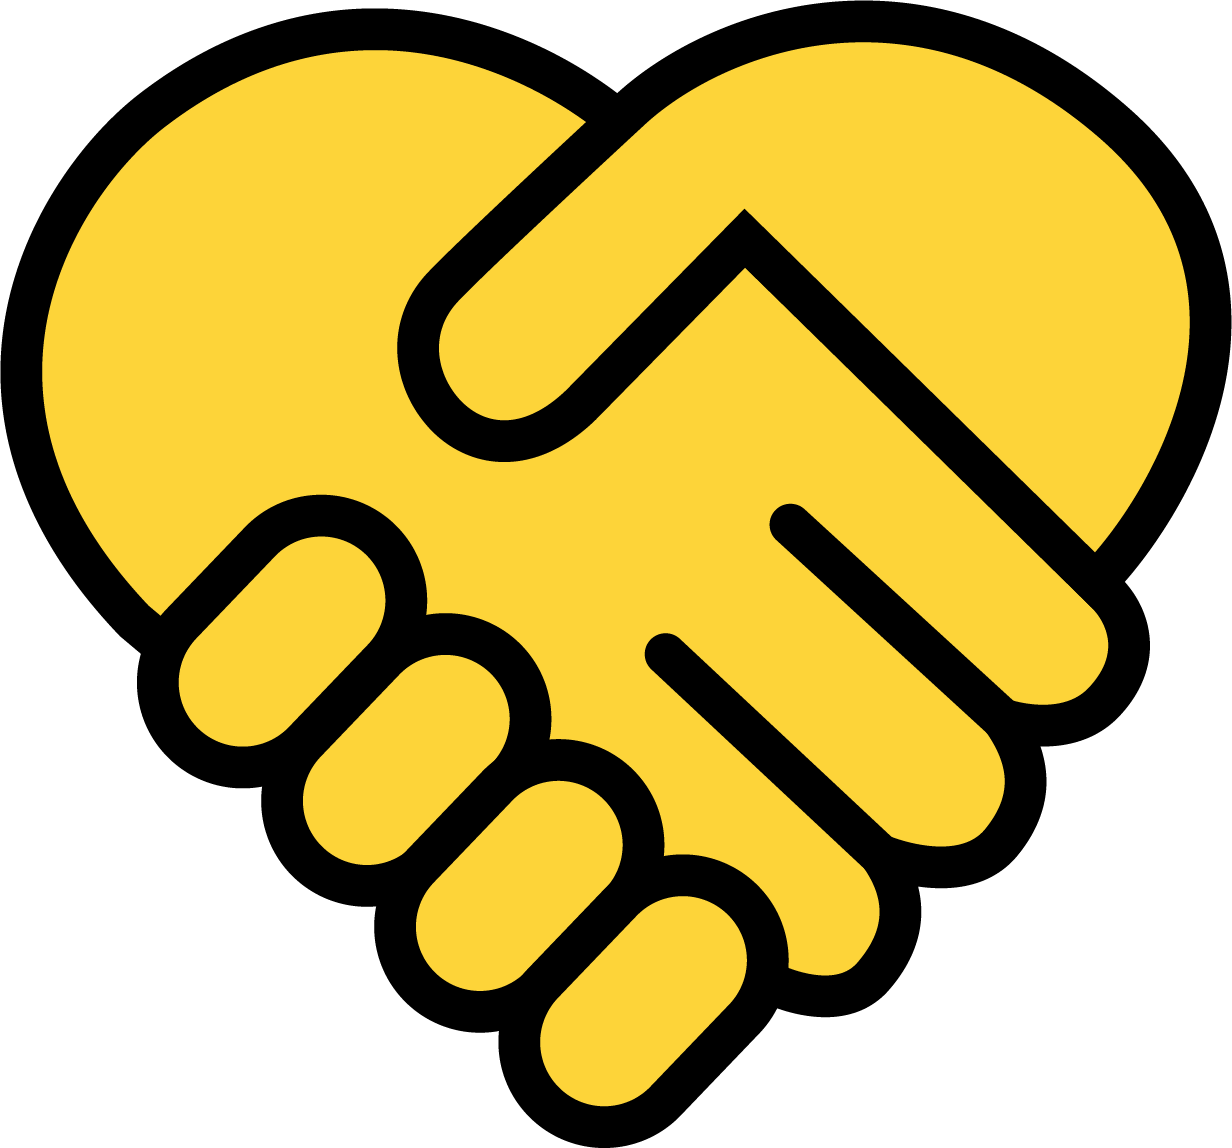 En svart och gul ikon av av två händer som formar ett hjärta.